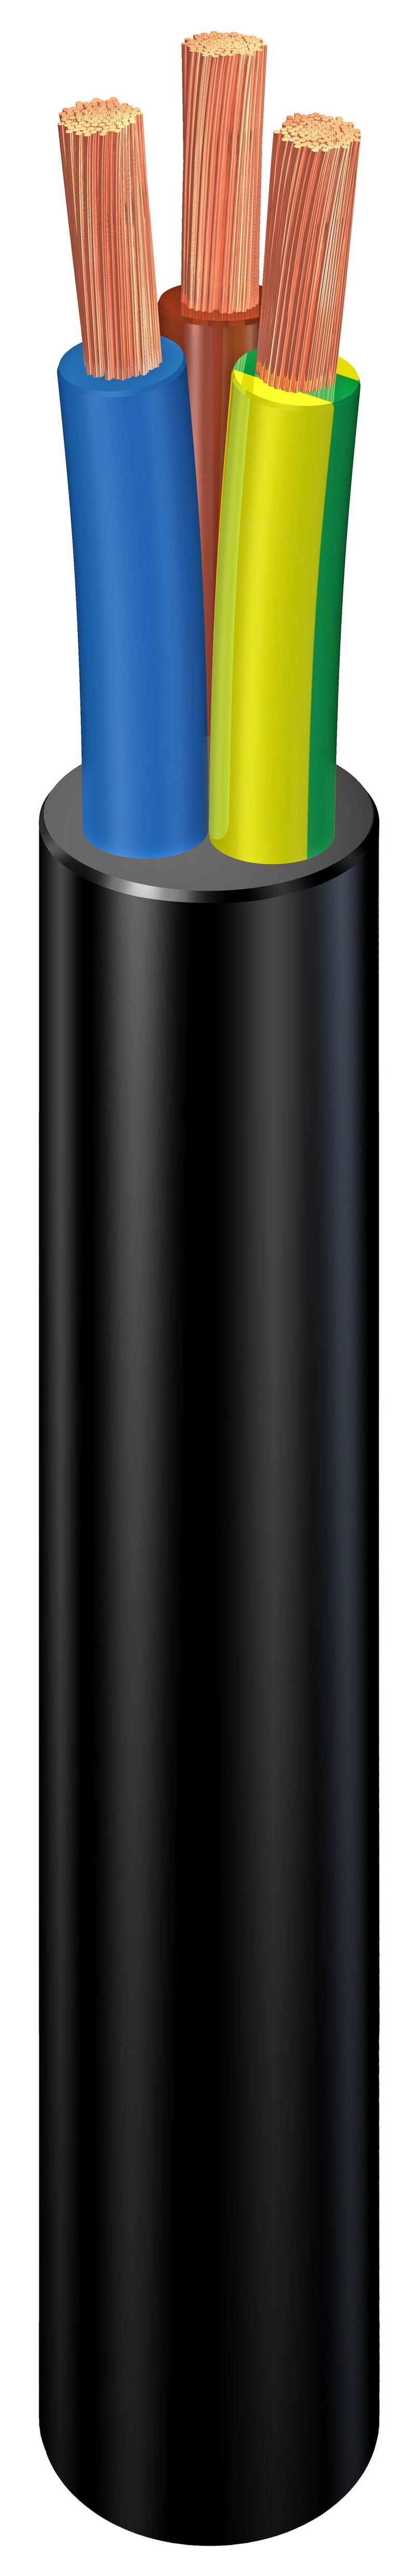 Cable eléctrico rvk de 3 hilos de 6 mm2, 100 m, color negro